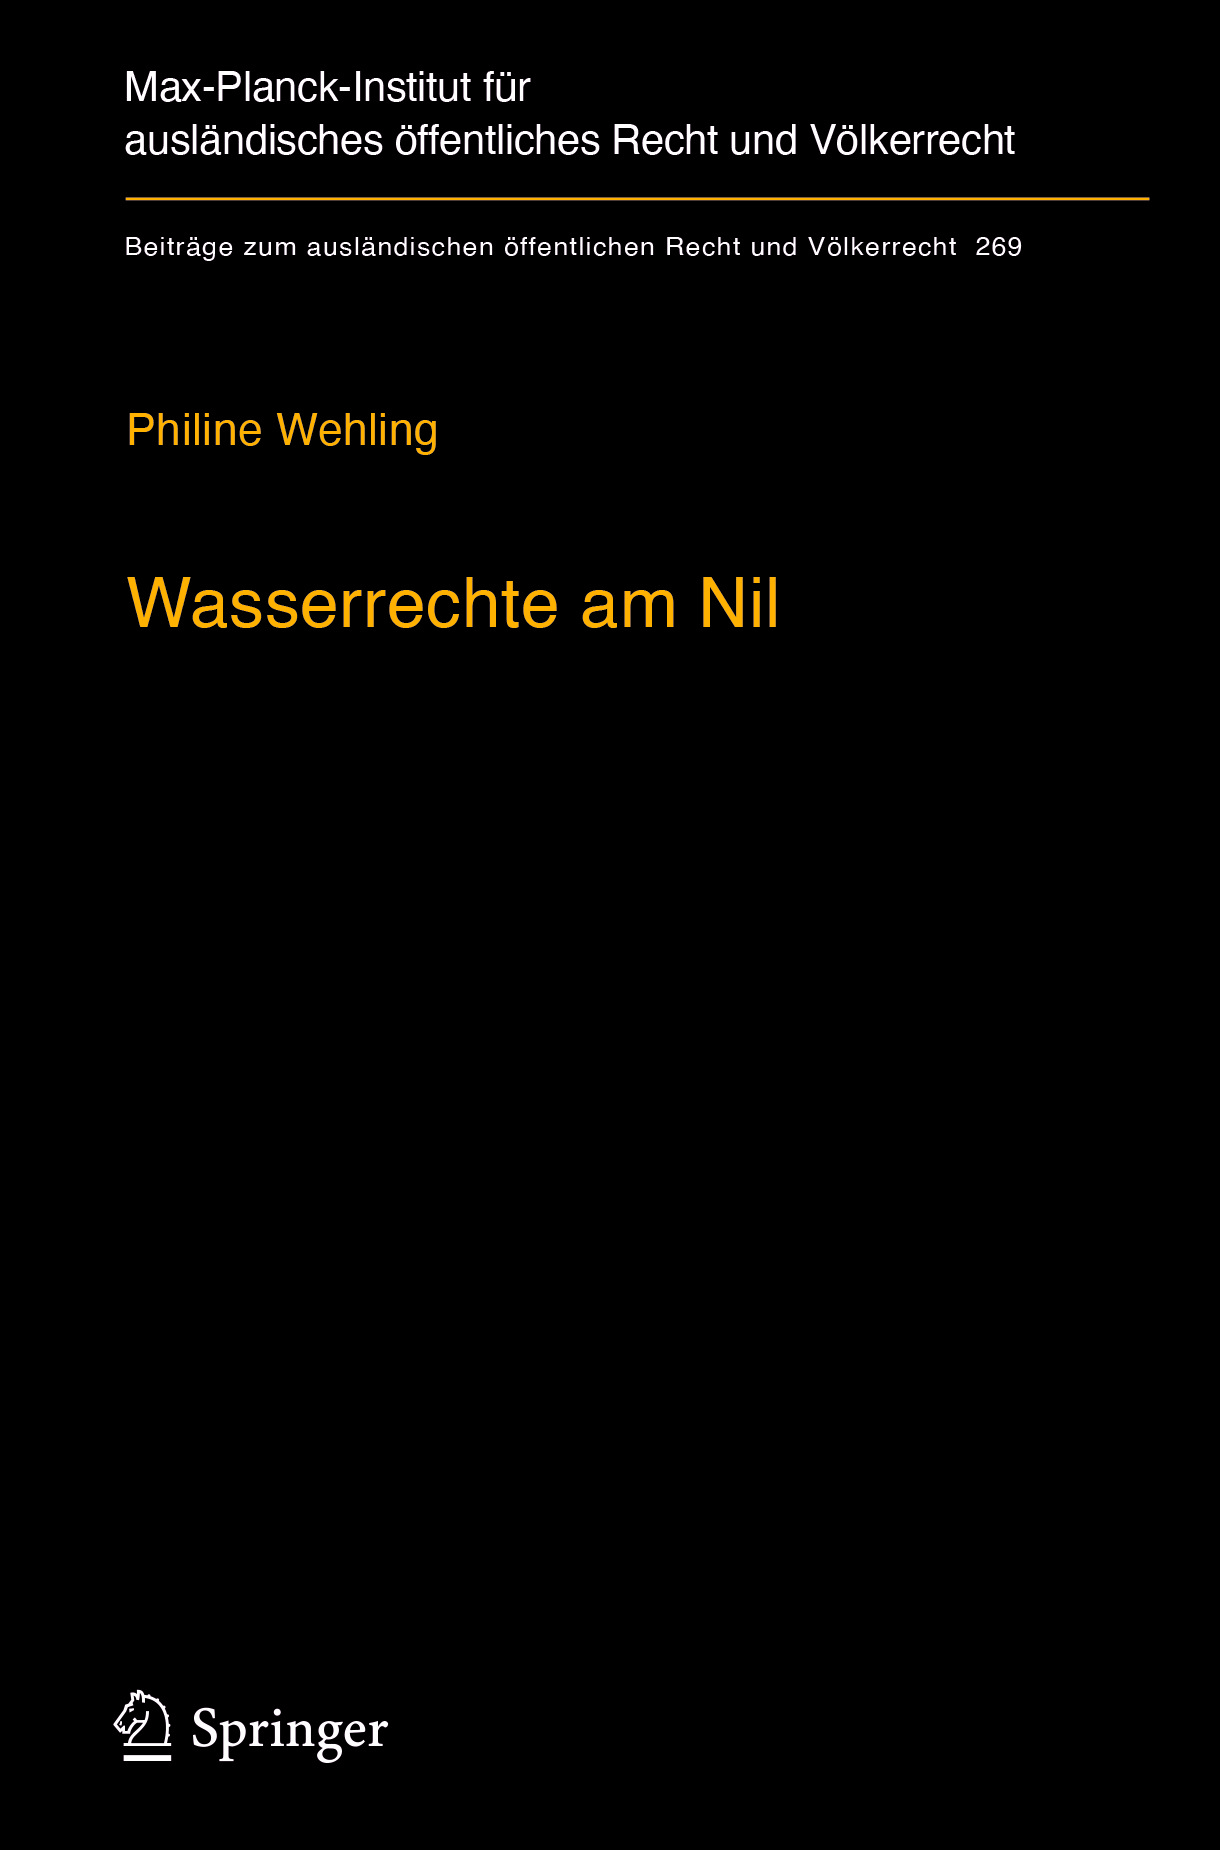 Wehling, Philine - Wasserrechte am Nil, ebook